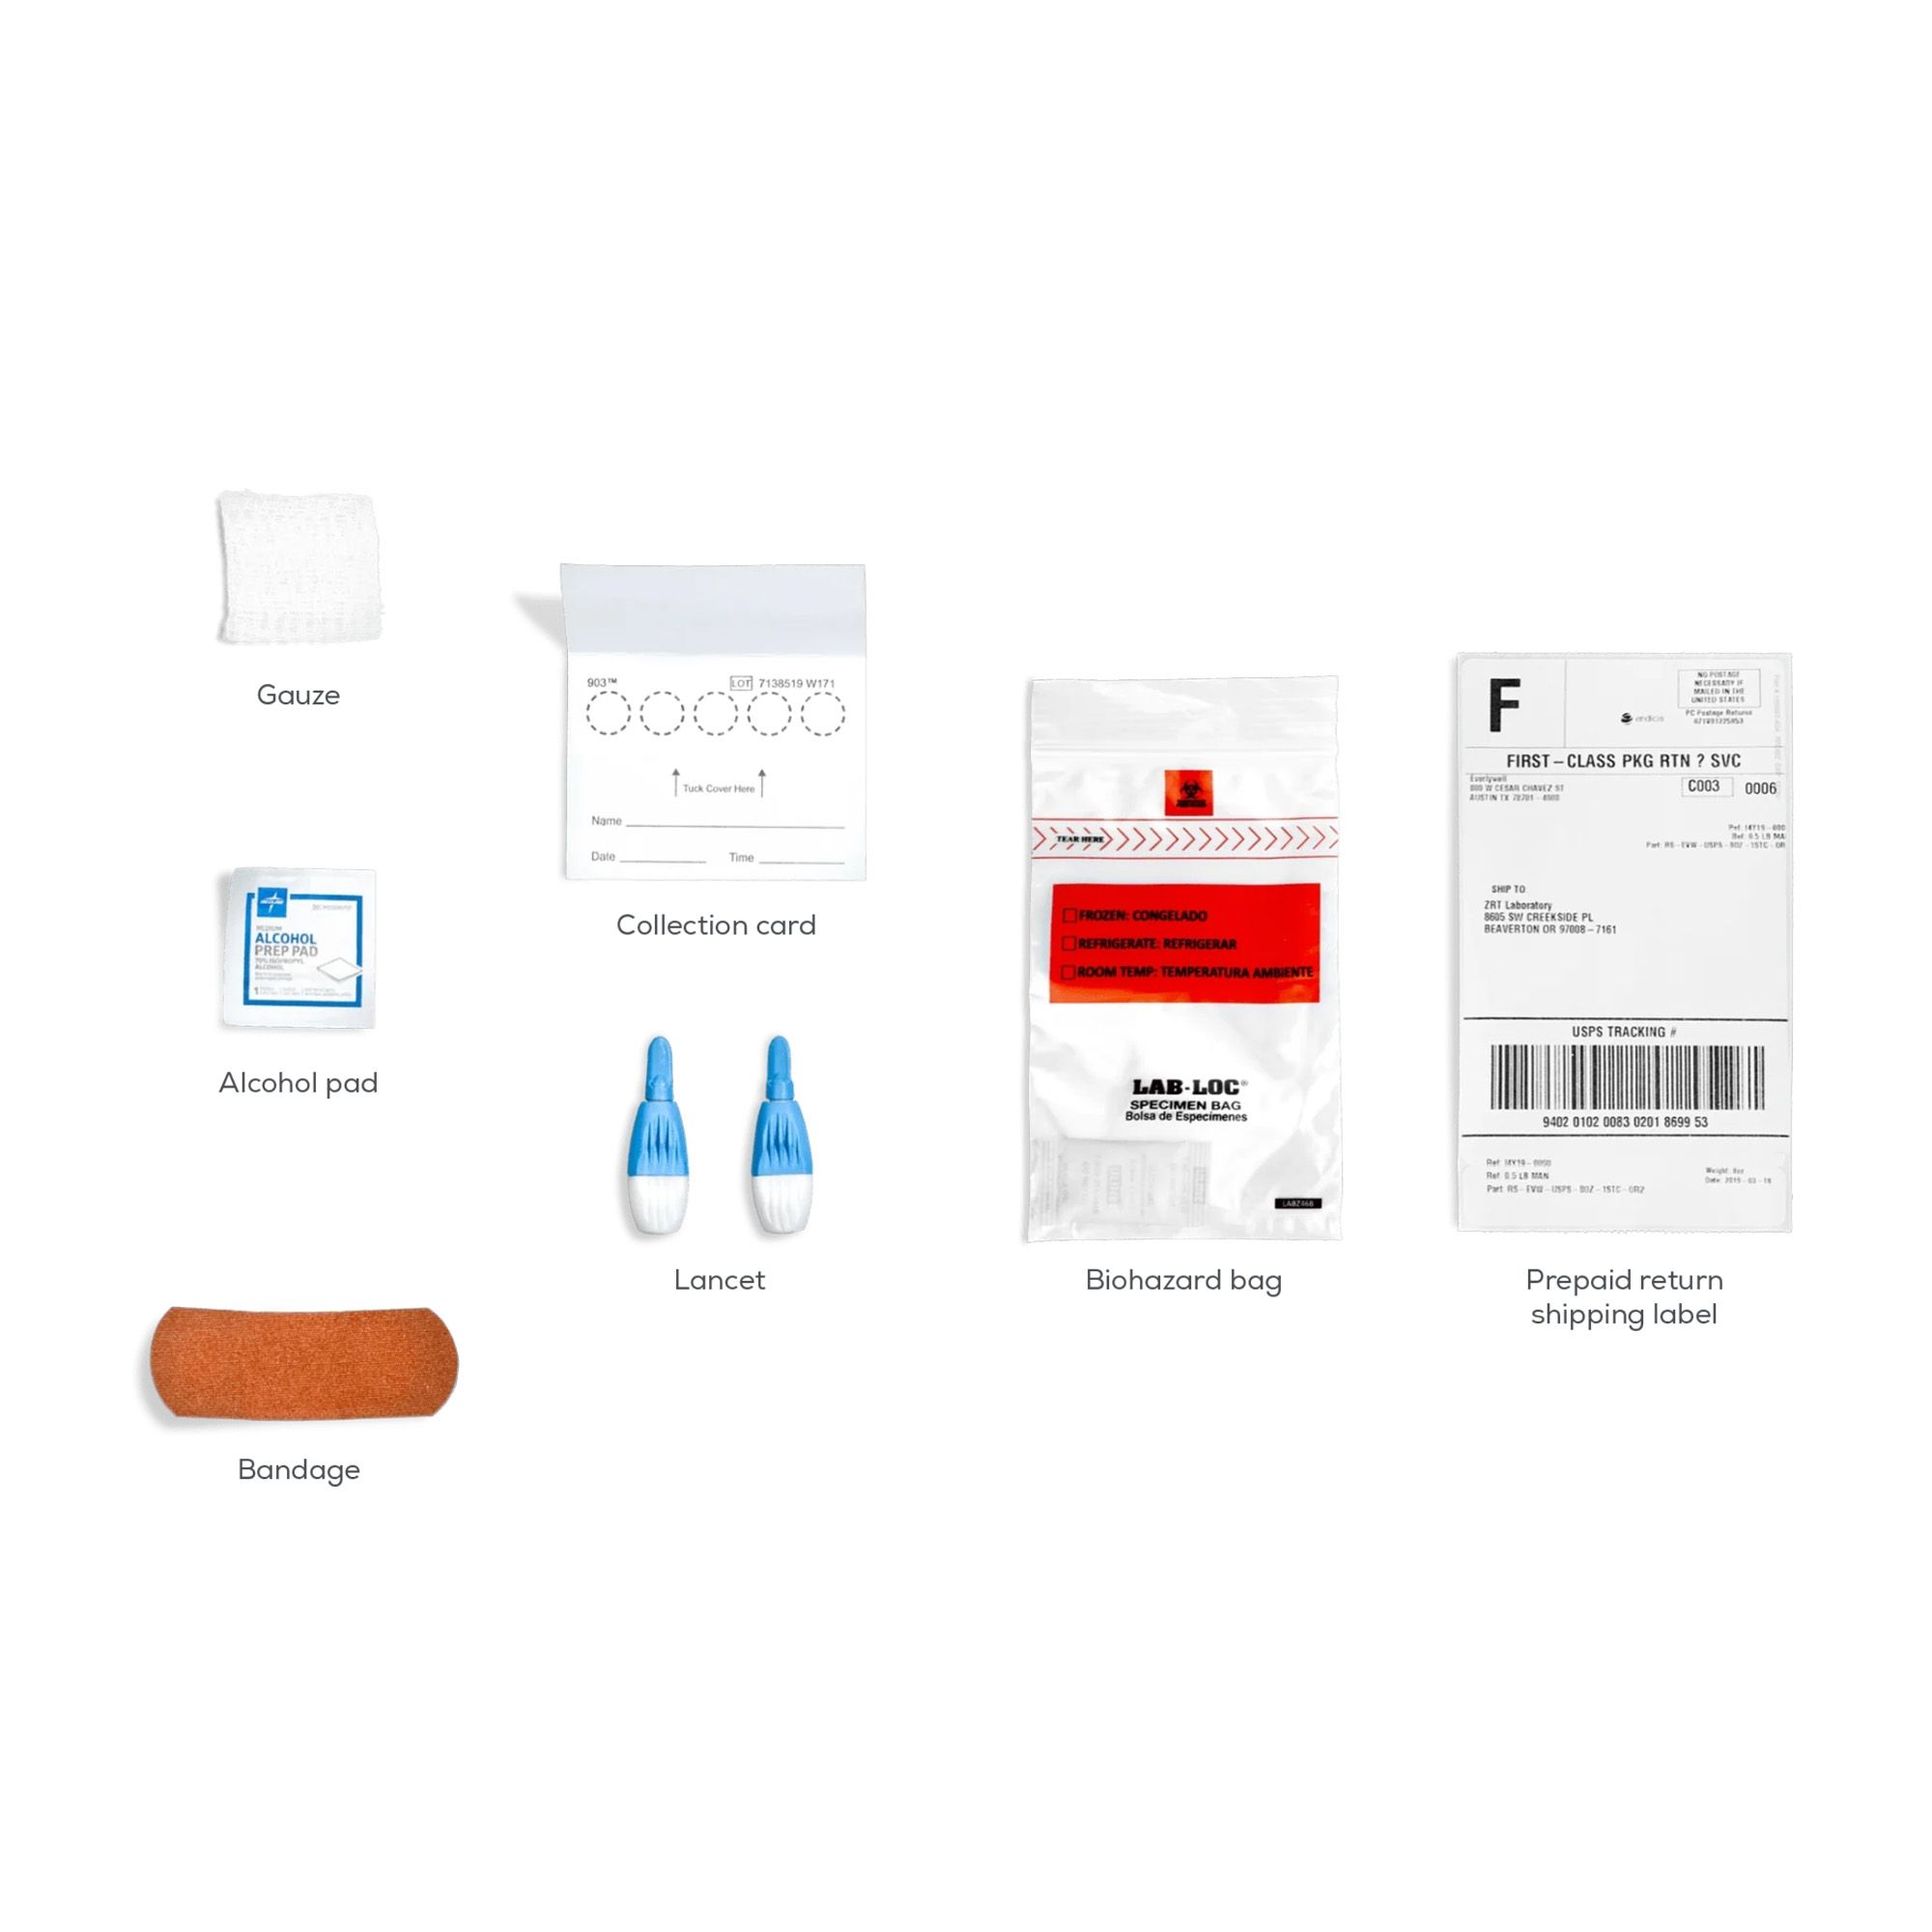 Everlywell Vitamin D Test - 1 Test Kit